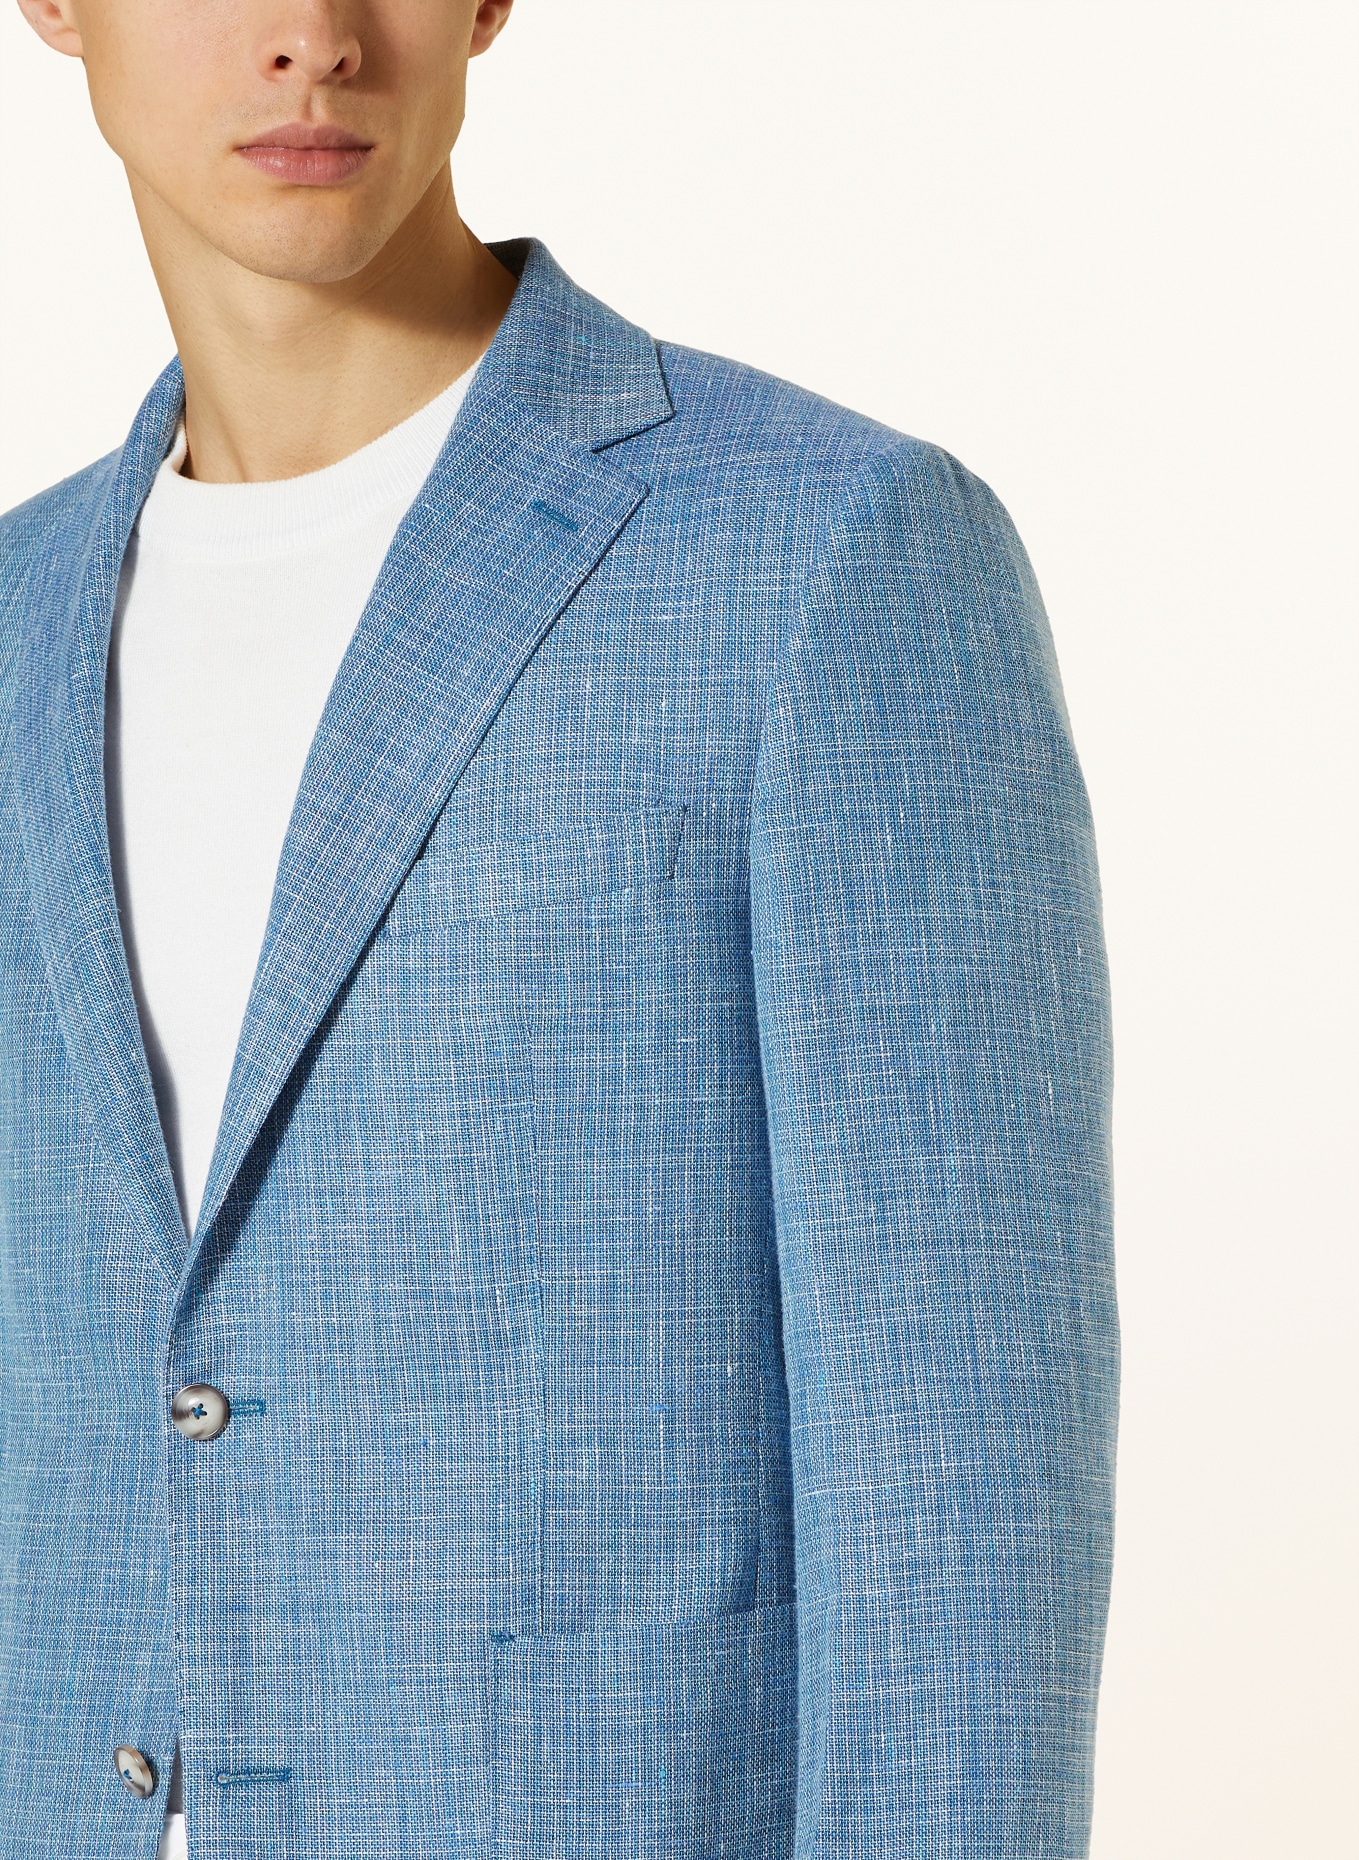 EDUARD DRESSLER Tailored jacket MATTEO comfort fit with linen, Color: 039 HELLBLAU (Image 5)